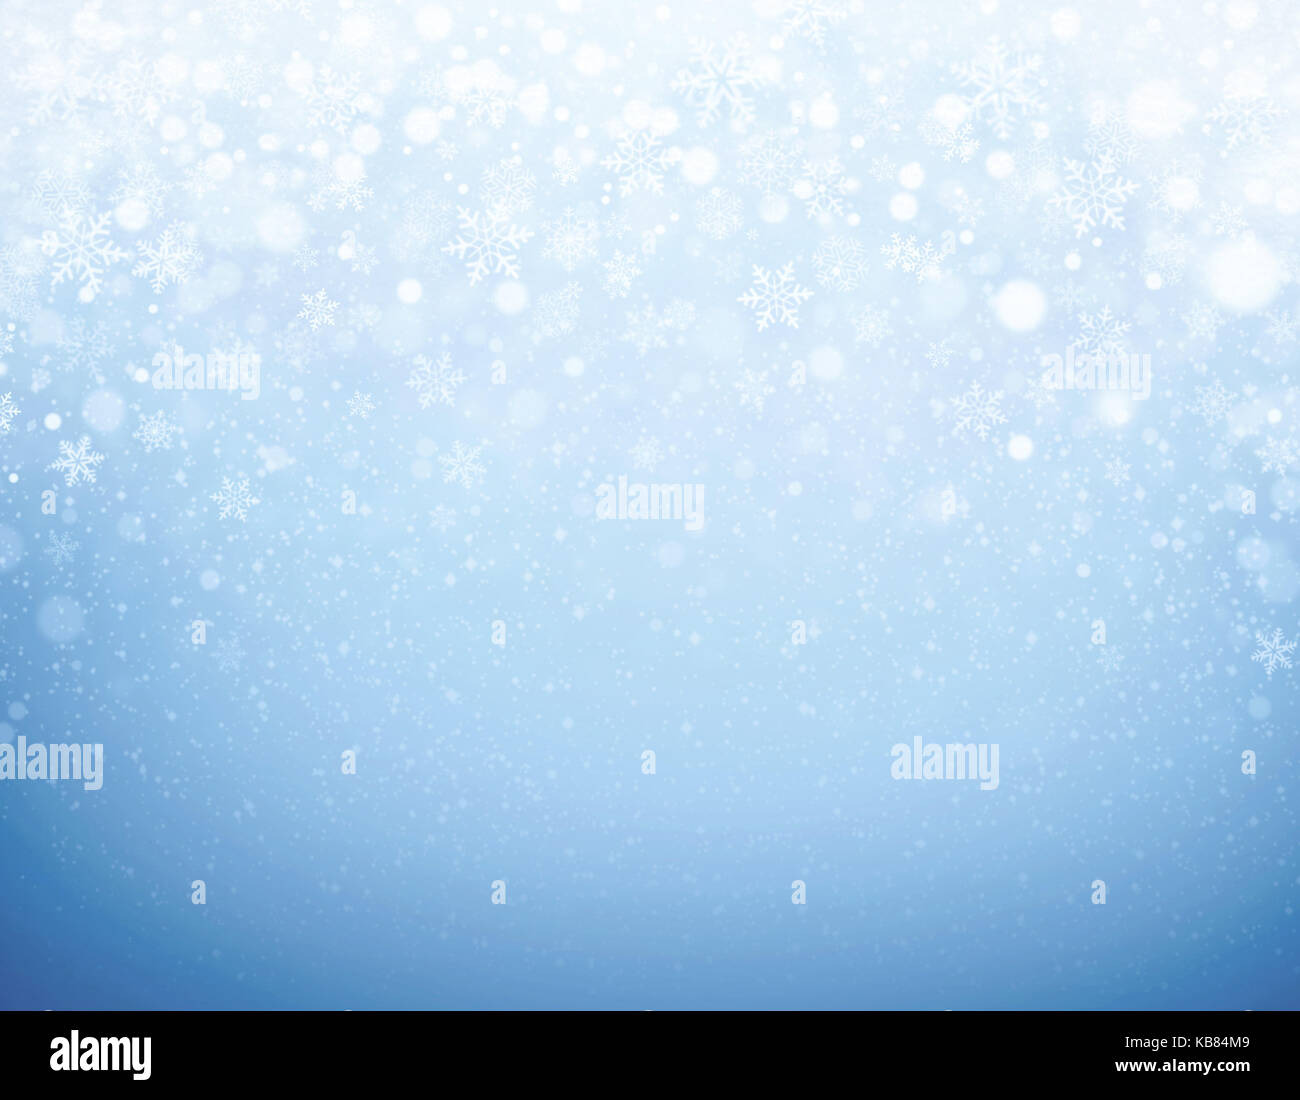 Schneeflocken Formen und Schneefall auf einem gefrorenen blauer Hintergrund - Winter Material Stockfoto